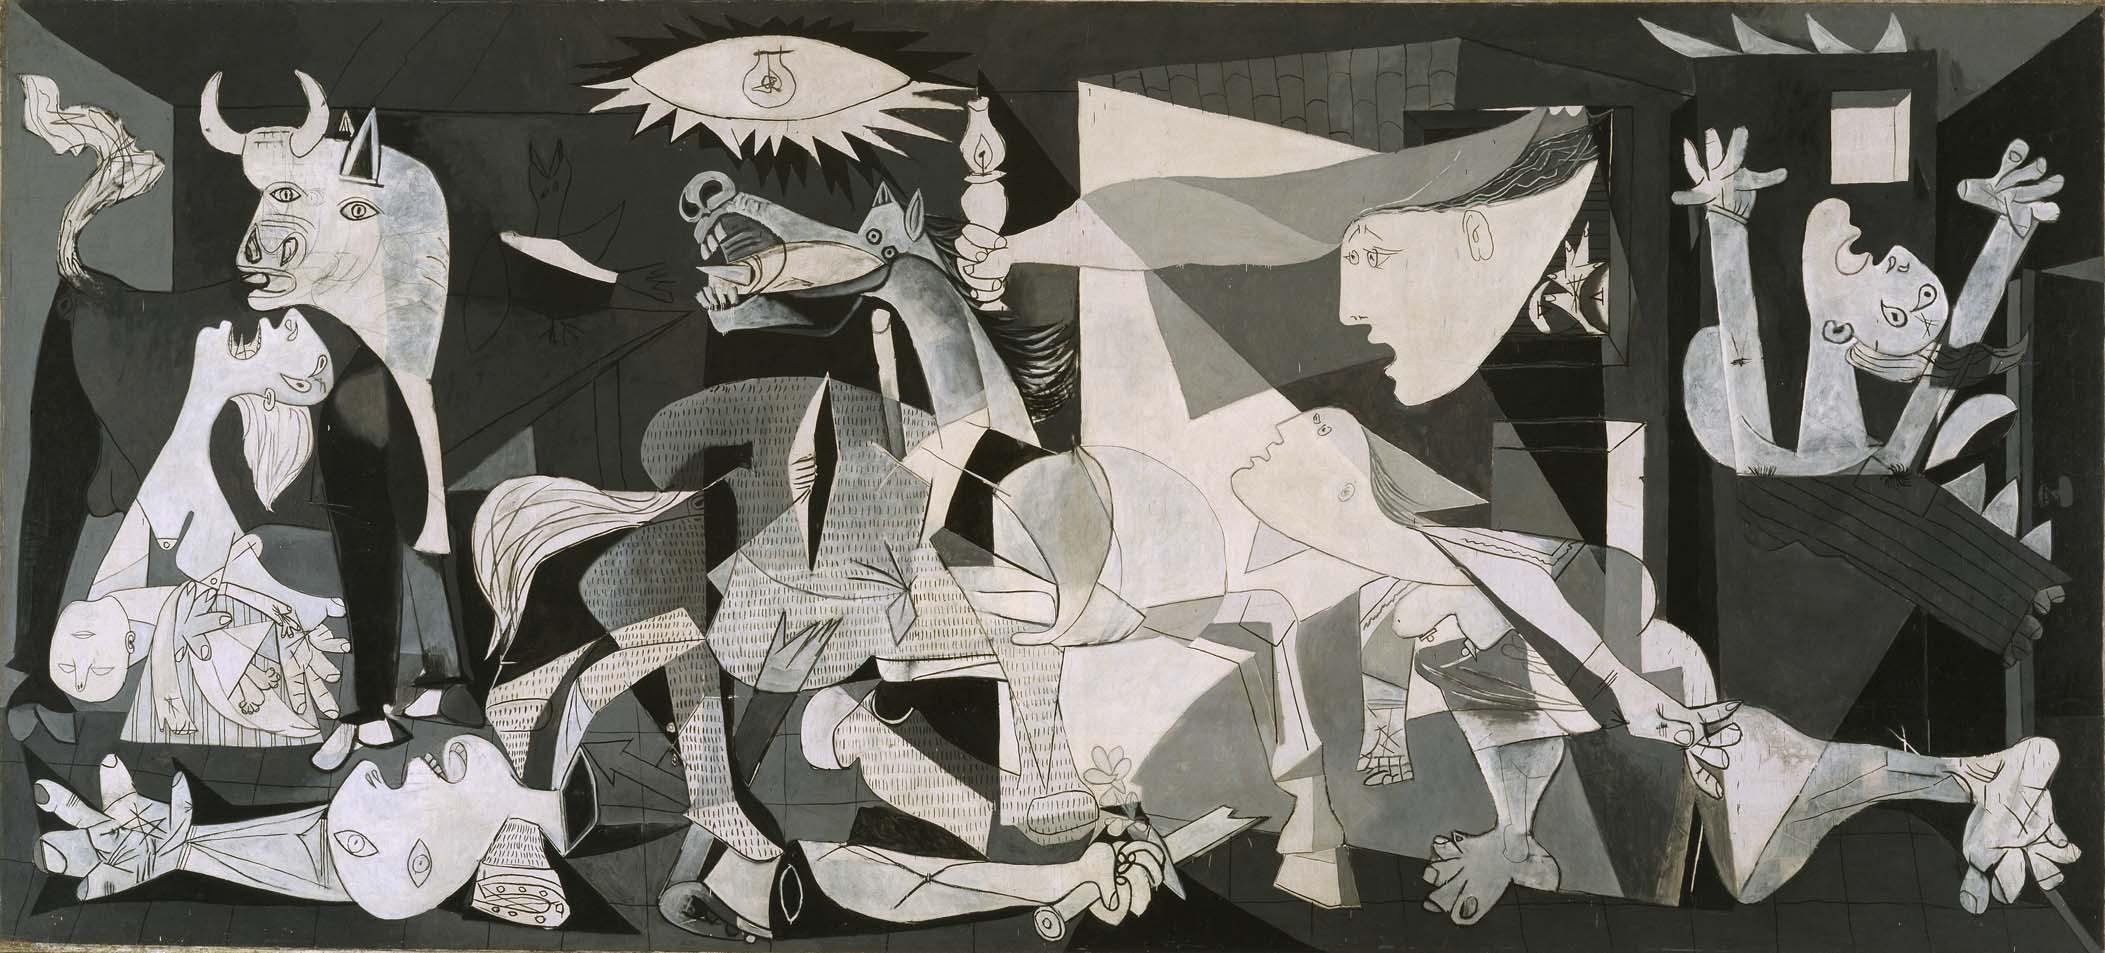 格尔尼卡 by 巴勃罗 毕加索 - 1937 - 349 cm × 776 cm 索菲亚王后国家艺术中心博物馆